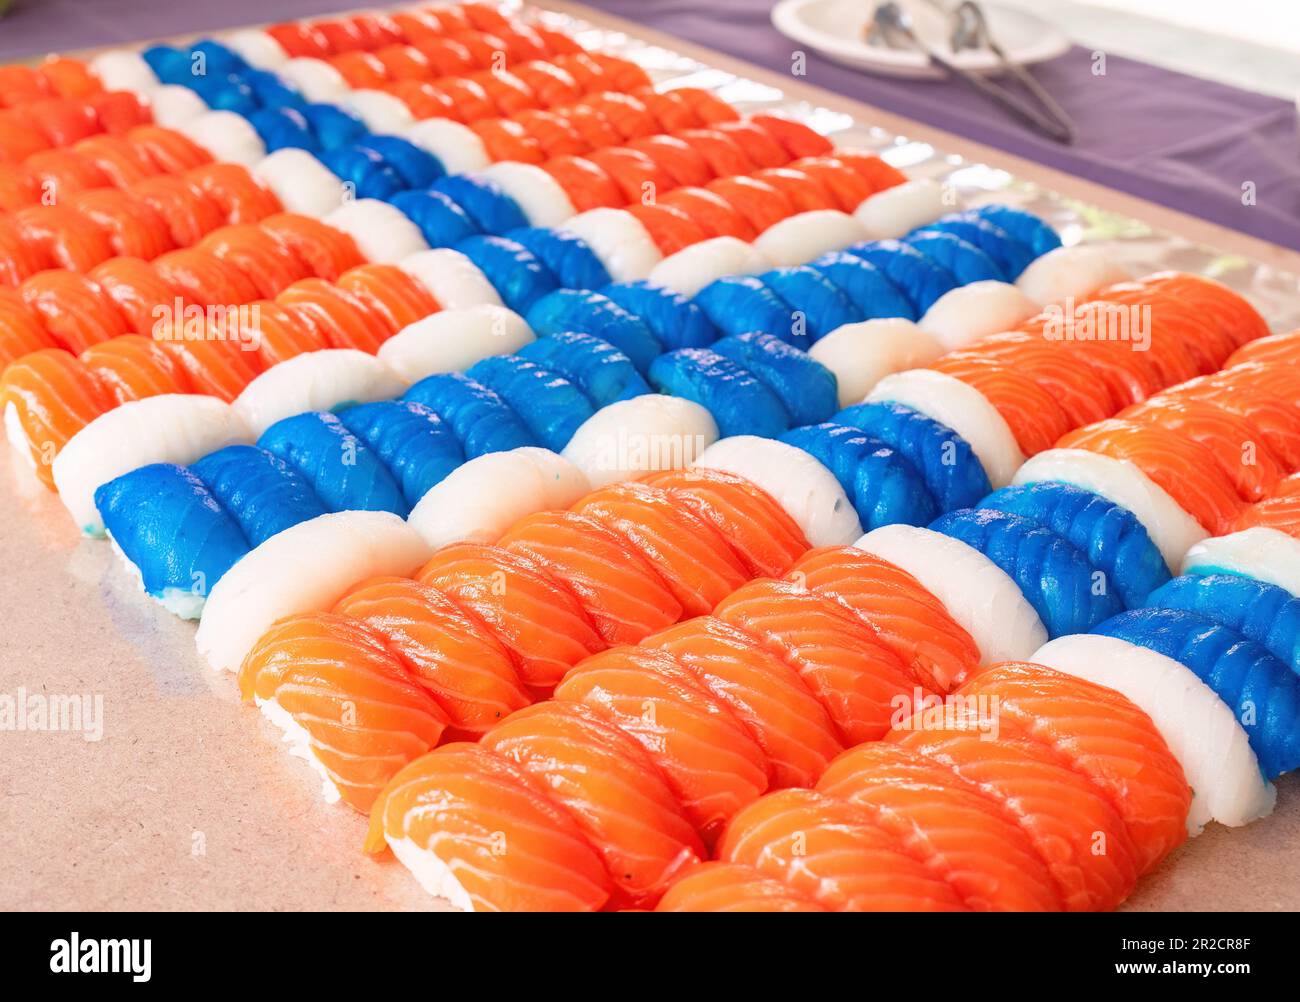 Pezzi di sushi nigiri, 140 di questi, fatti di salmone, pesce bianco e pesce bianco di colore blu disposti come una bandiera norvegese. Profondità bassa di f Foto Stock